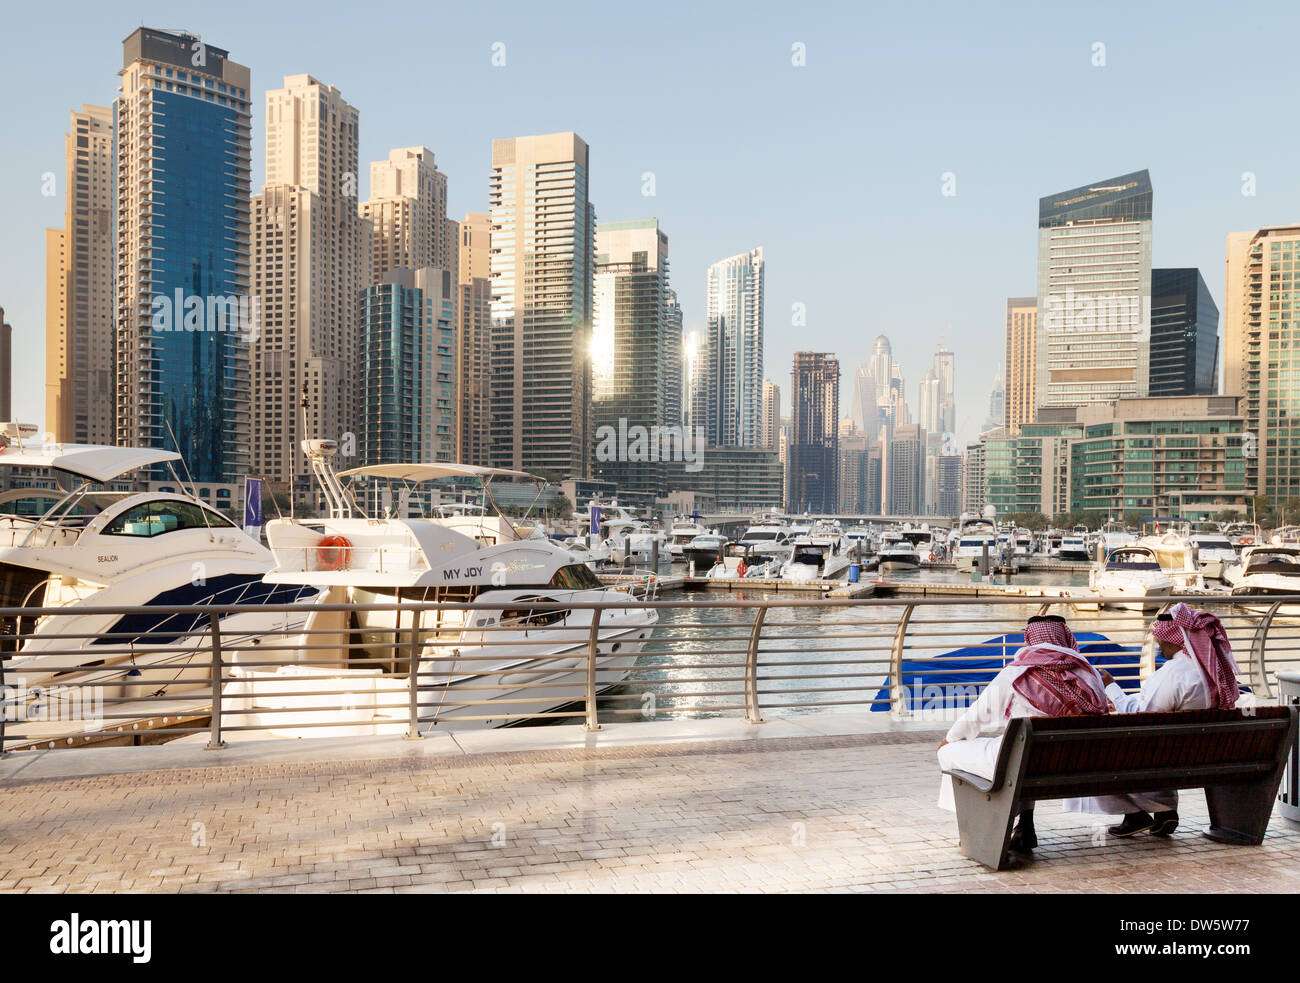 Two local arab men sitting in Dubai Marina, Jumeirah Towers area, Dubai UAE, United Arab Emirates, Middle East Stock Photo